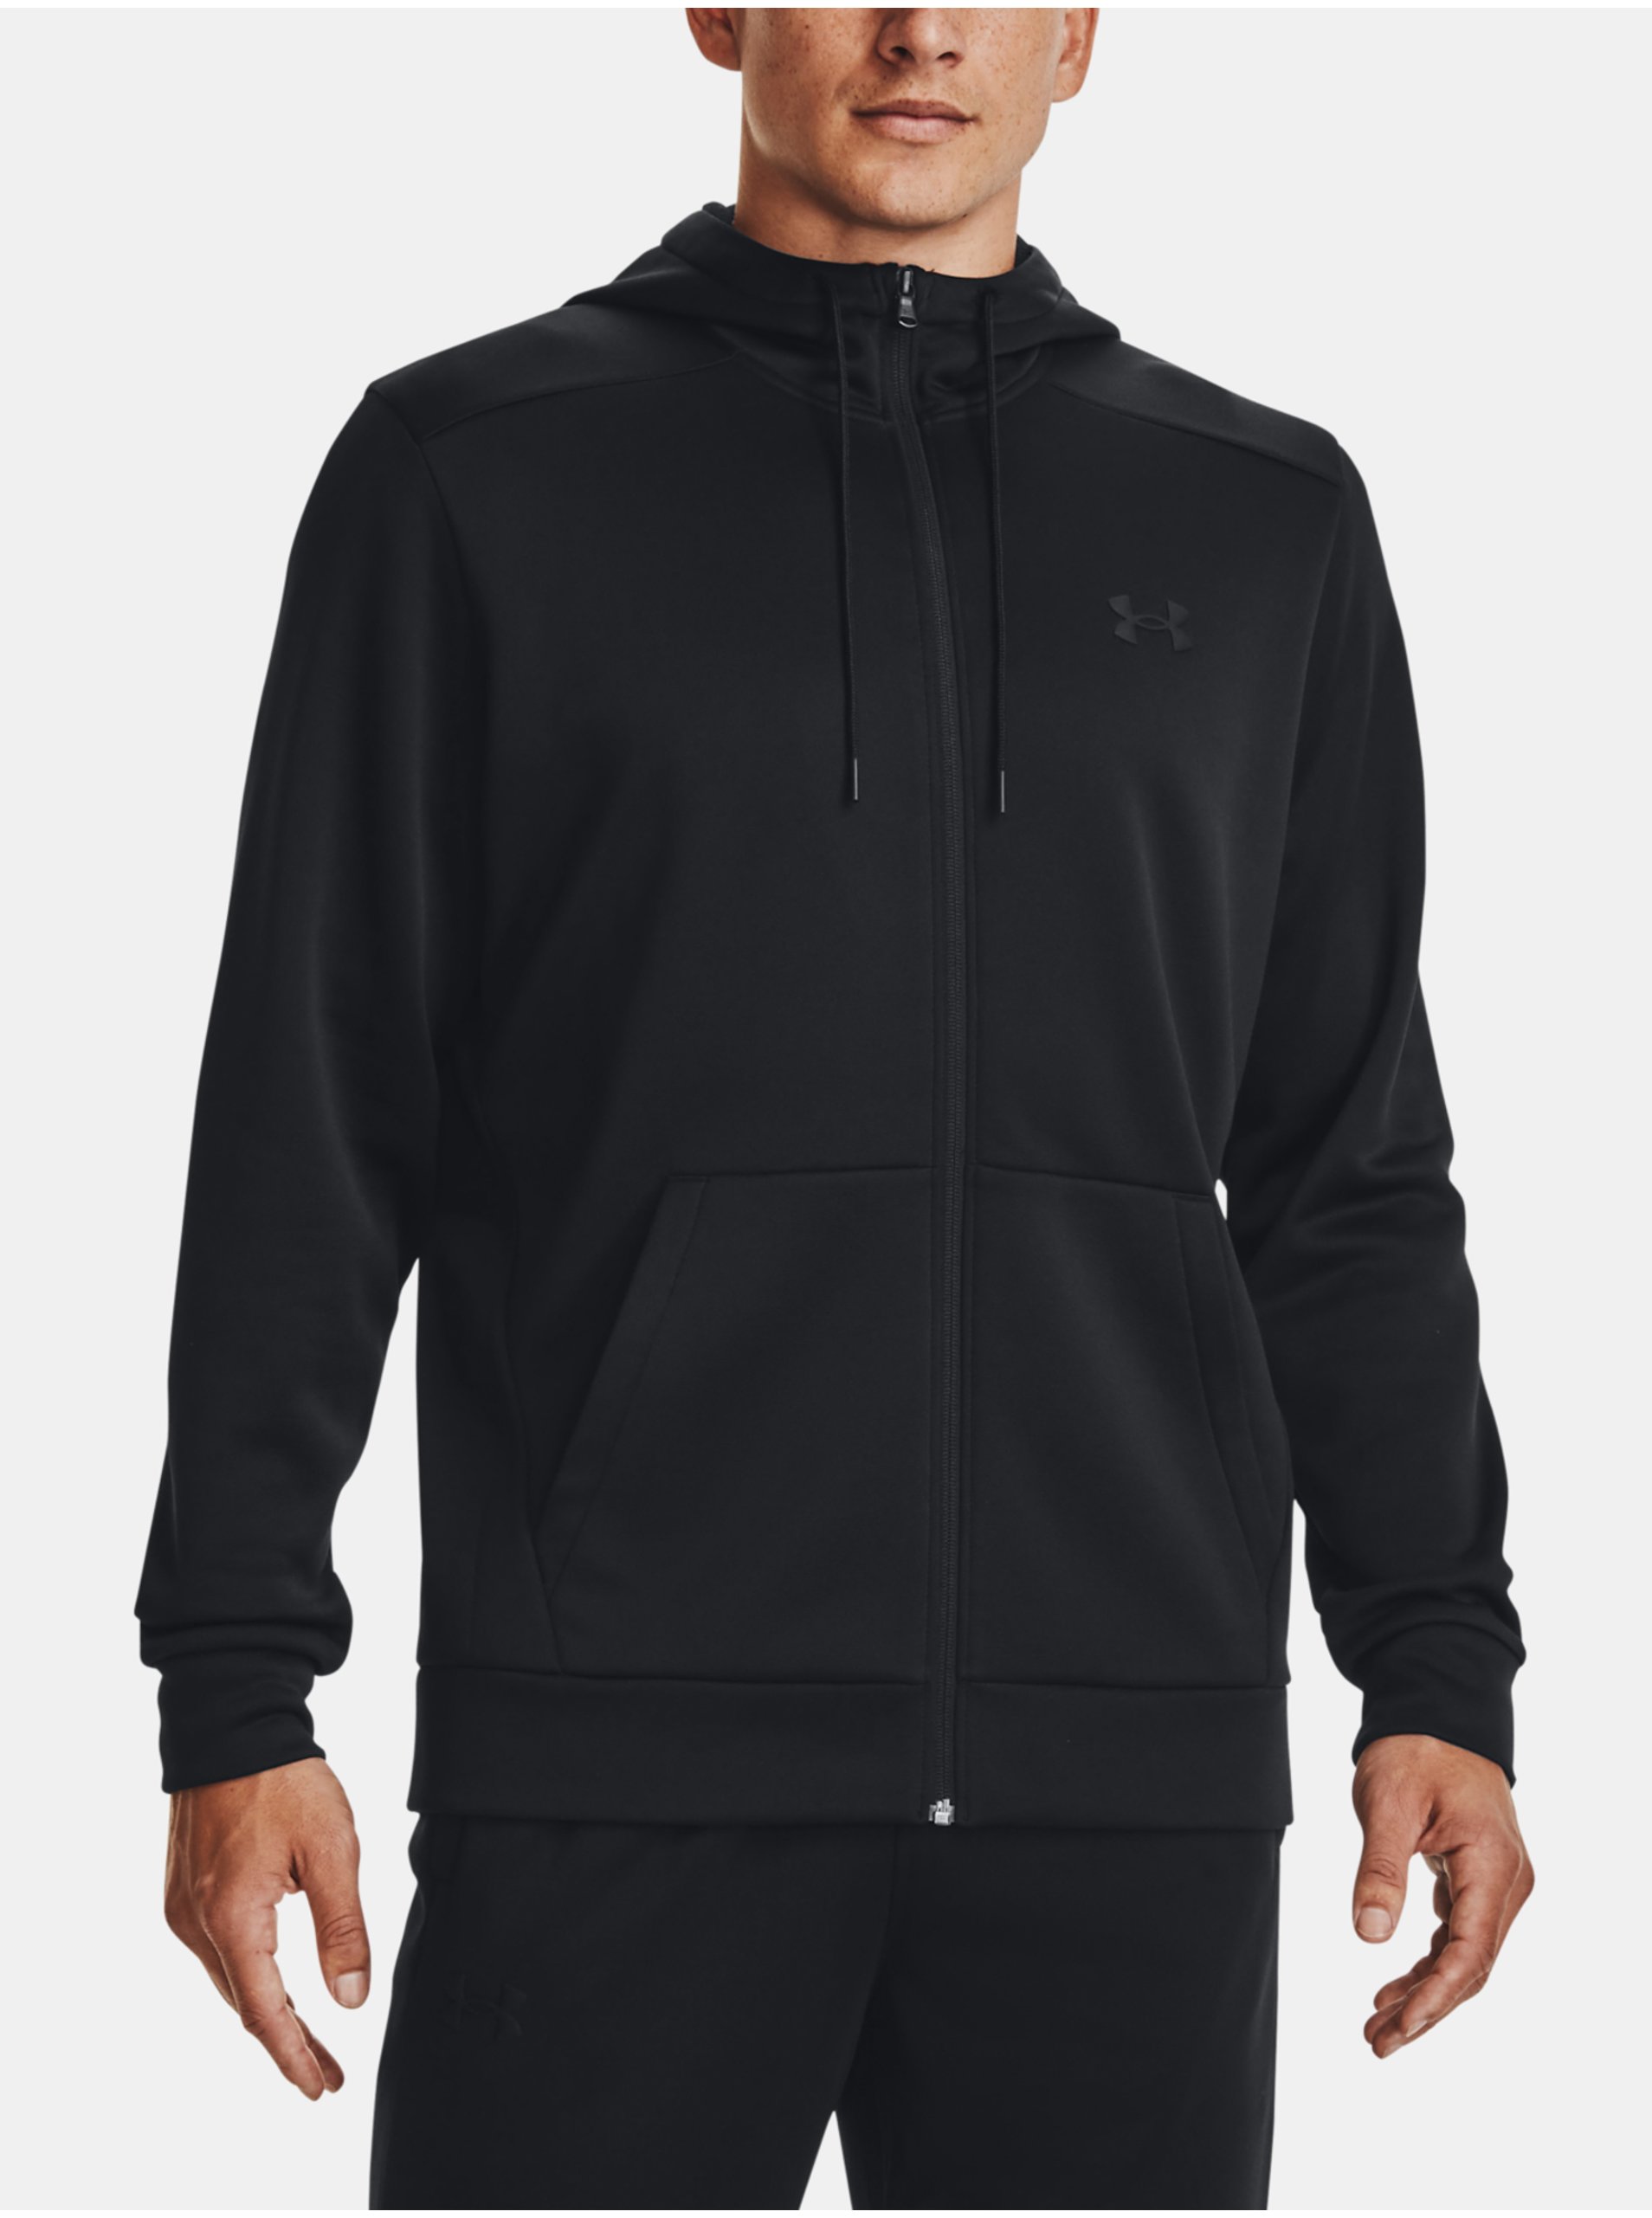 E-shop Černá pánská sportovní fleecová mikina na zip s kapucí Under Armour Fleece FZ